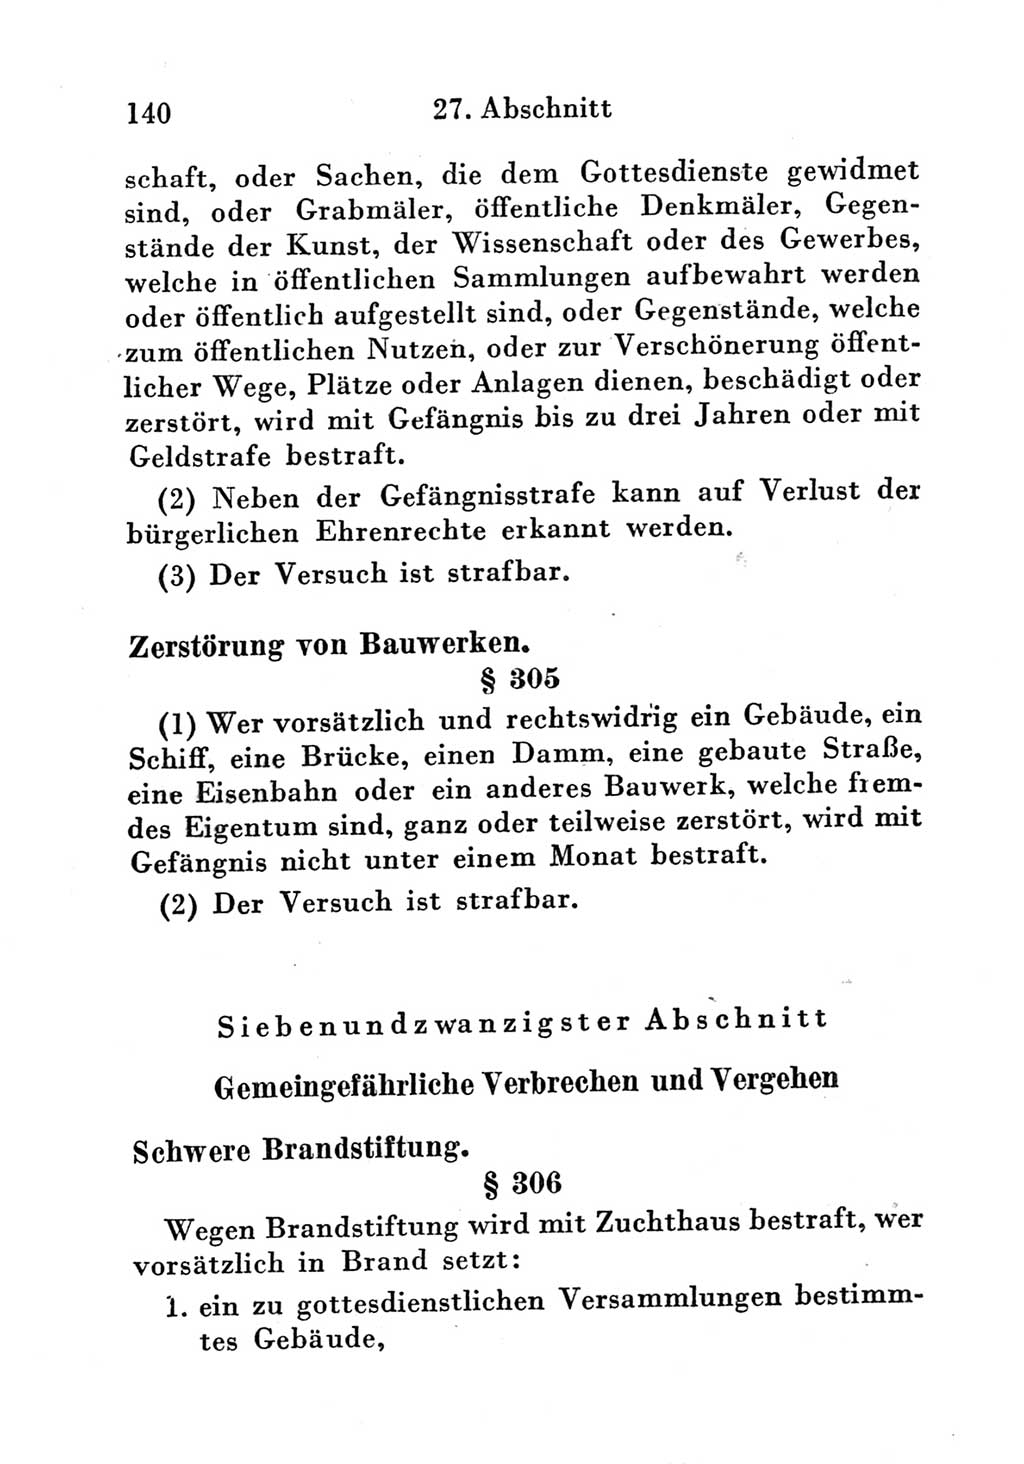 Strafgesetzbuch (StGB) und andere Strafgesetze [Deutsche Demokratische Republik (DDR)] 1951, Seite 140 (StGB Strafges. DDR 1951, S. 140)